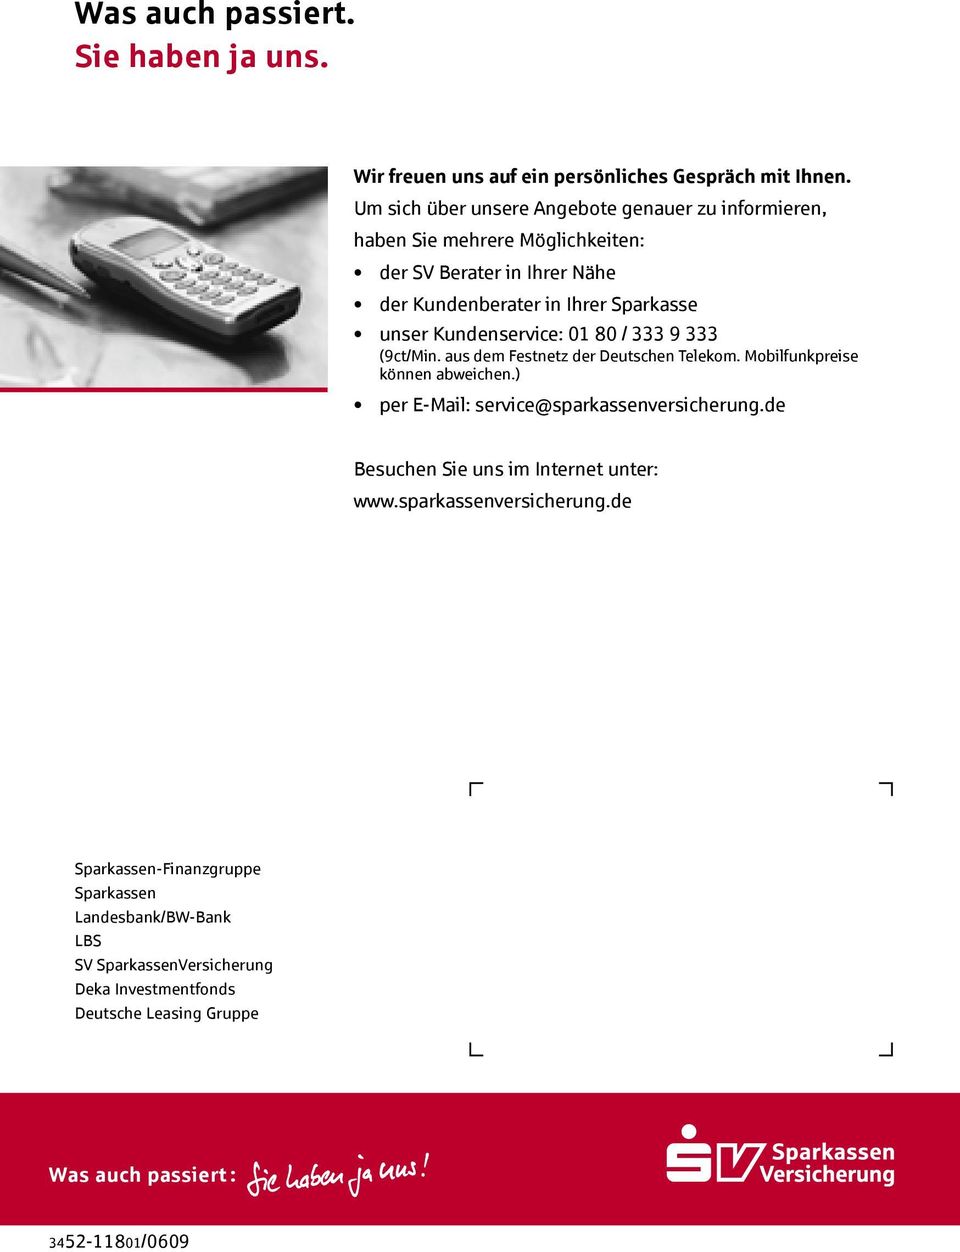 Kundenservice: 01 80 / 333 9 333 (9ct/Min. aus dem Festnetz der Deutschen Telekom. Mobilfunkpreise können abweichen.) per E-Mail: service@sparkassenversicherung.